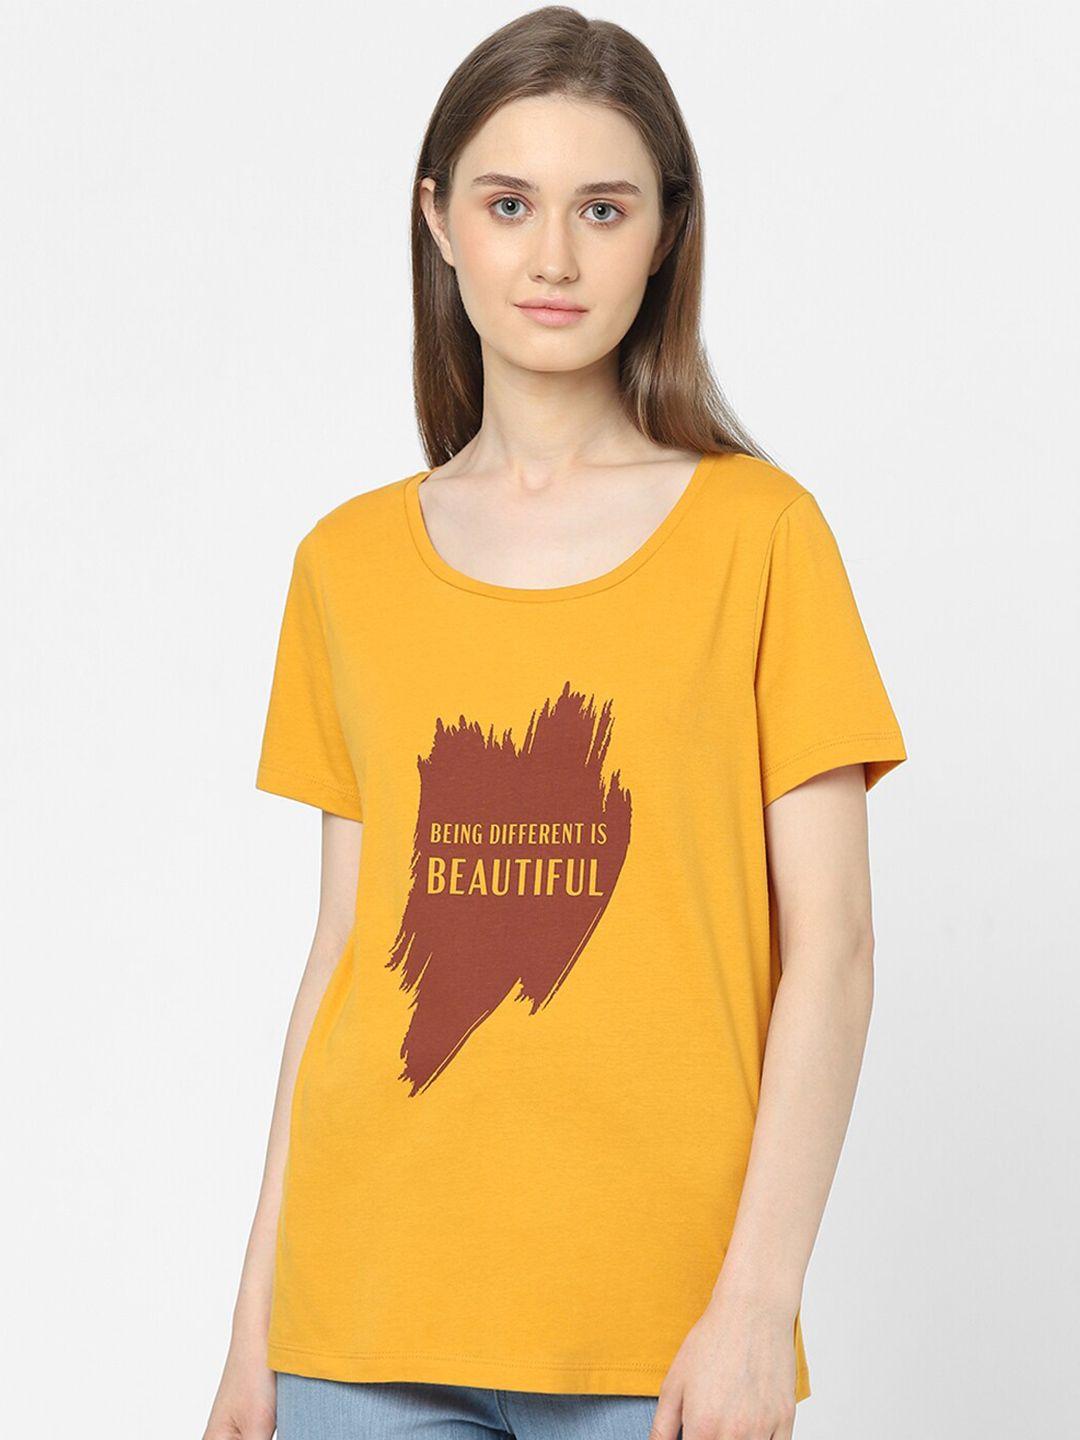 vero moda women mustard yellow typography printed t-shirt